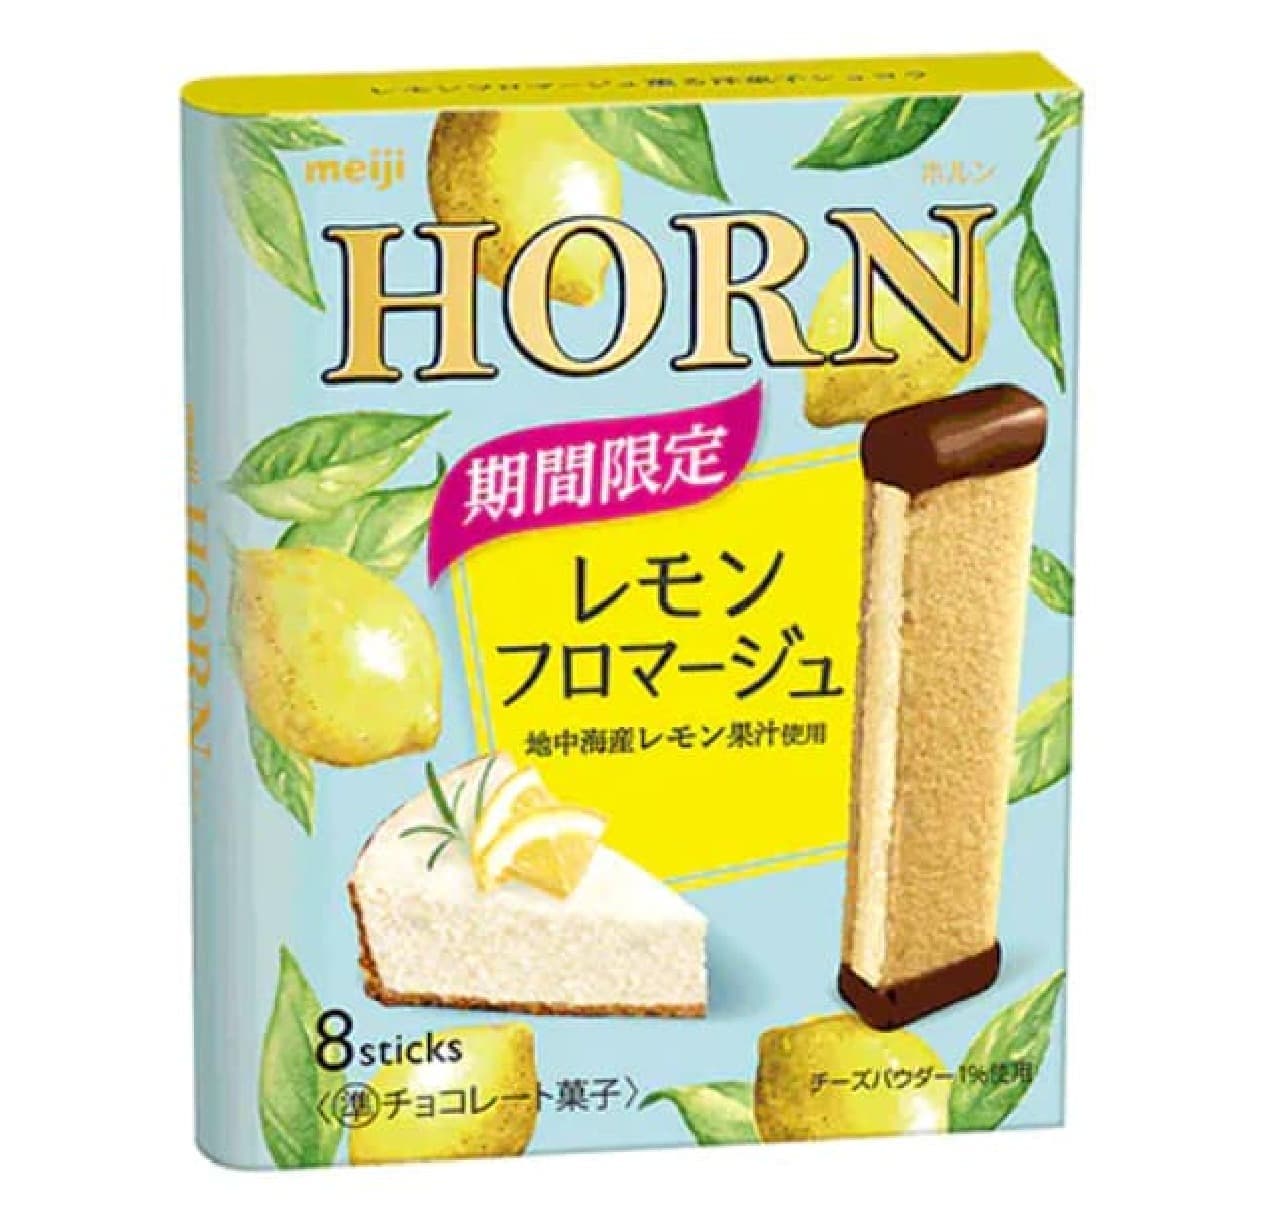 Horn Lemon Fromage